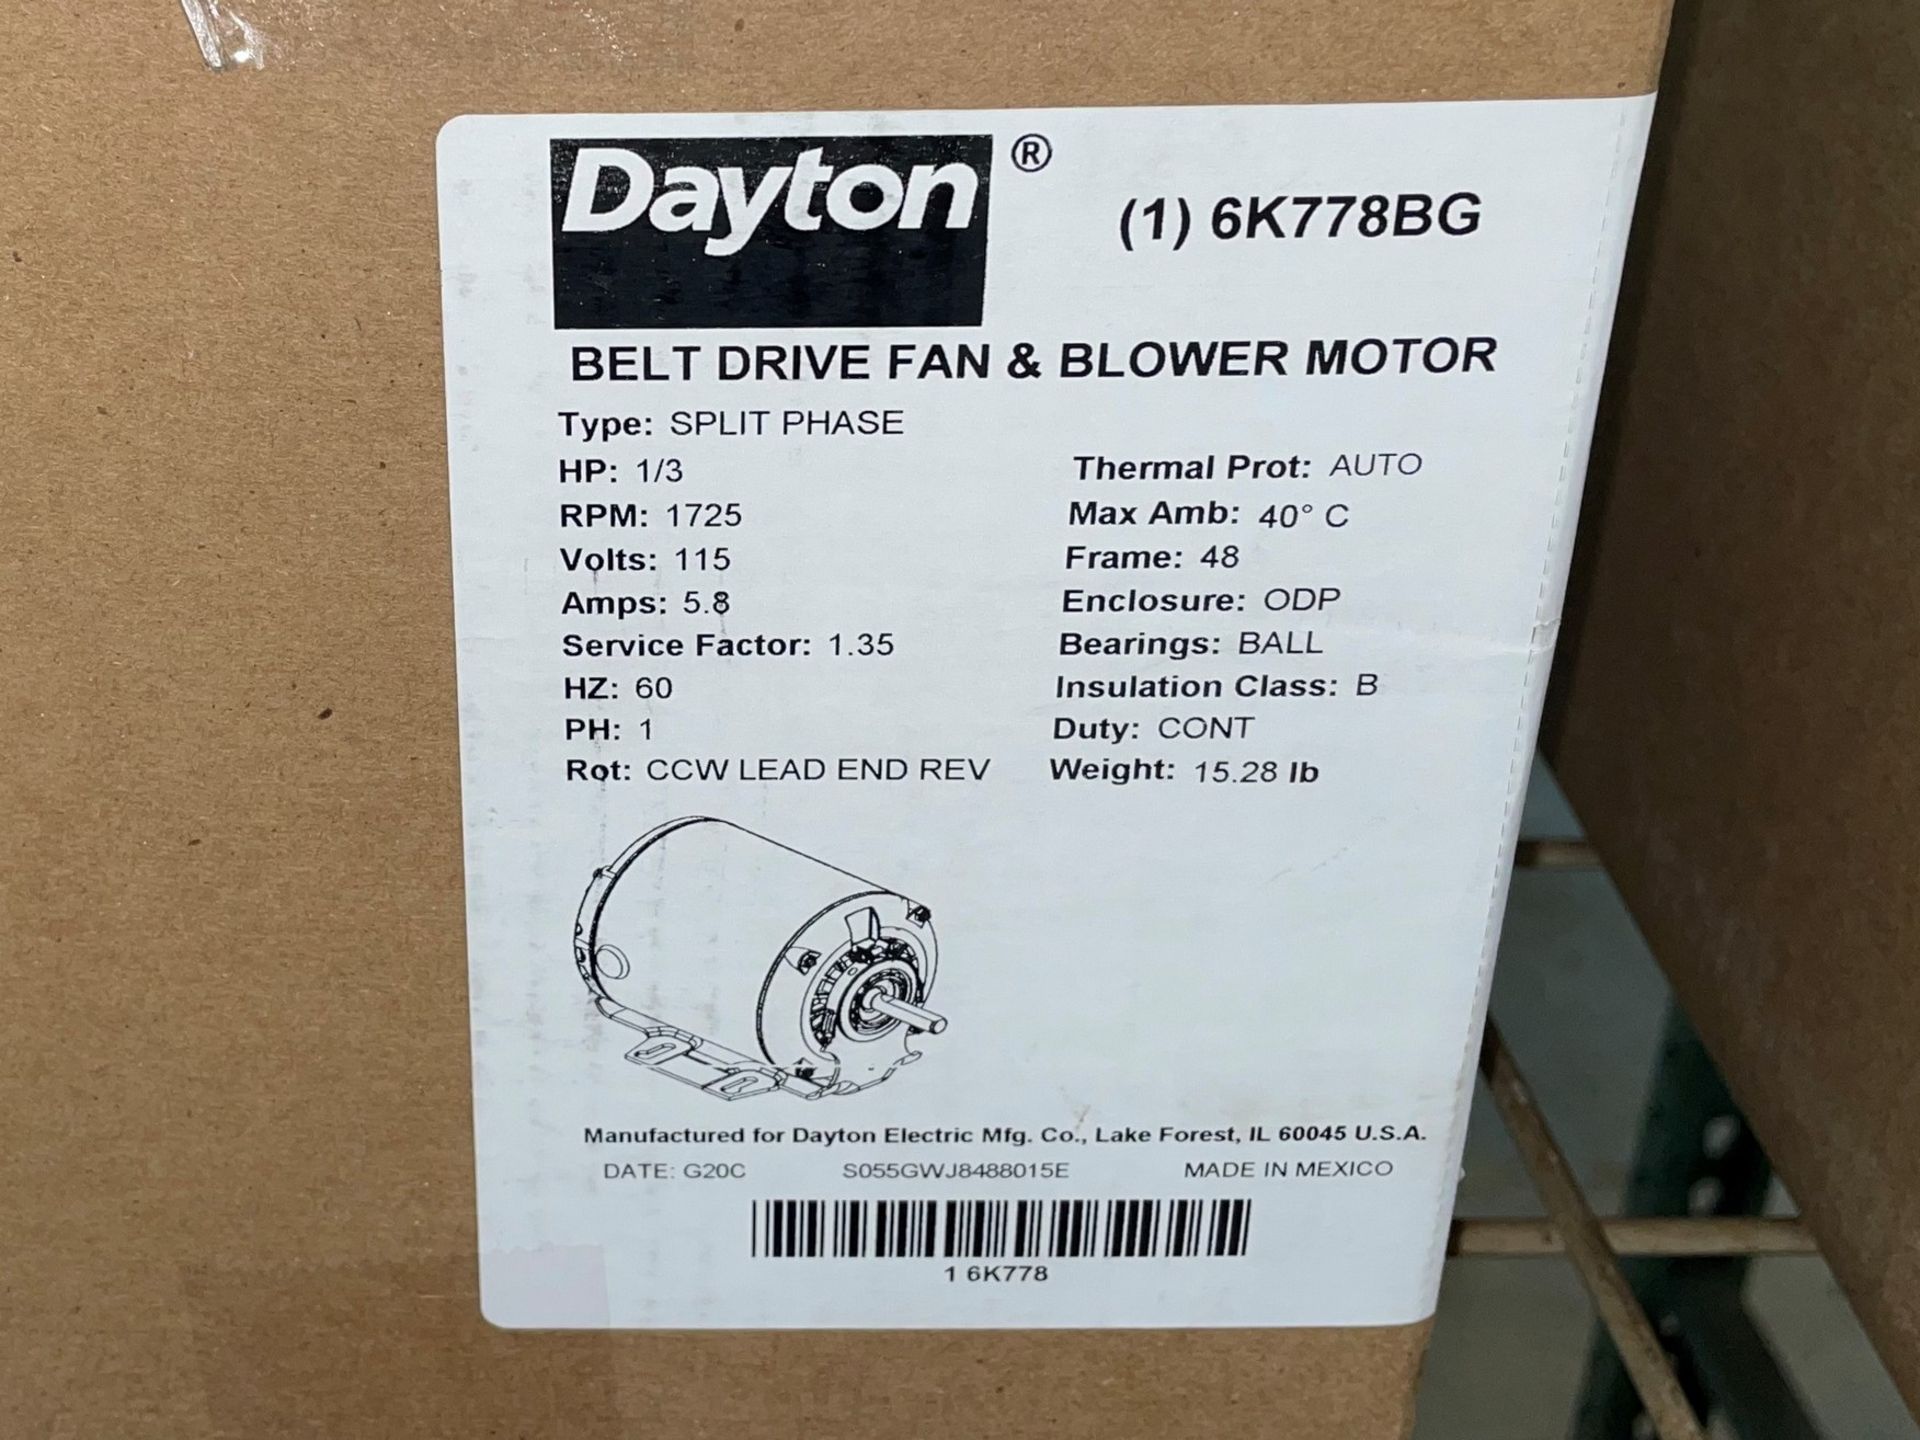 Dayton 6K778BG Belt Drive and Blower Split Phase Motor, 1/3HP - Image 3 of 3